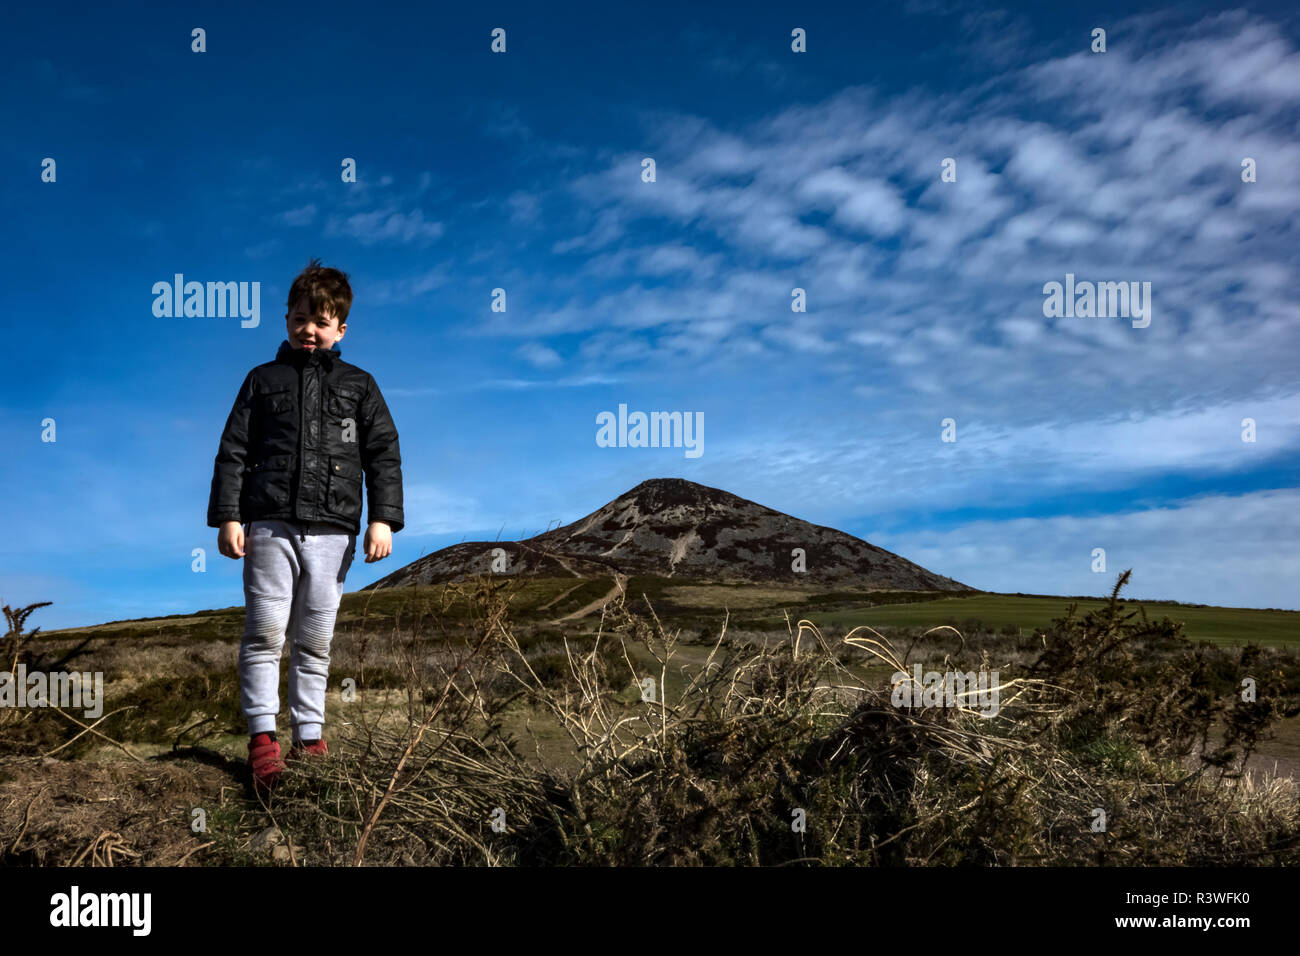 Jeune garçon sous un ciel bleu avec des nuages blancs sur un jour lumineux en face de la montagne Sugarloaf dans le comté de Wicklow, Irlande de l'ouest bordant le norther Banque D'Images